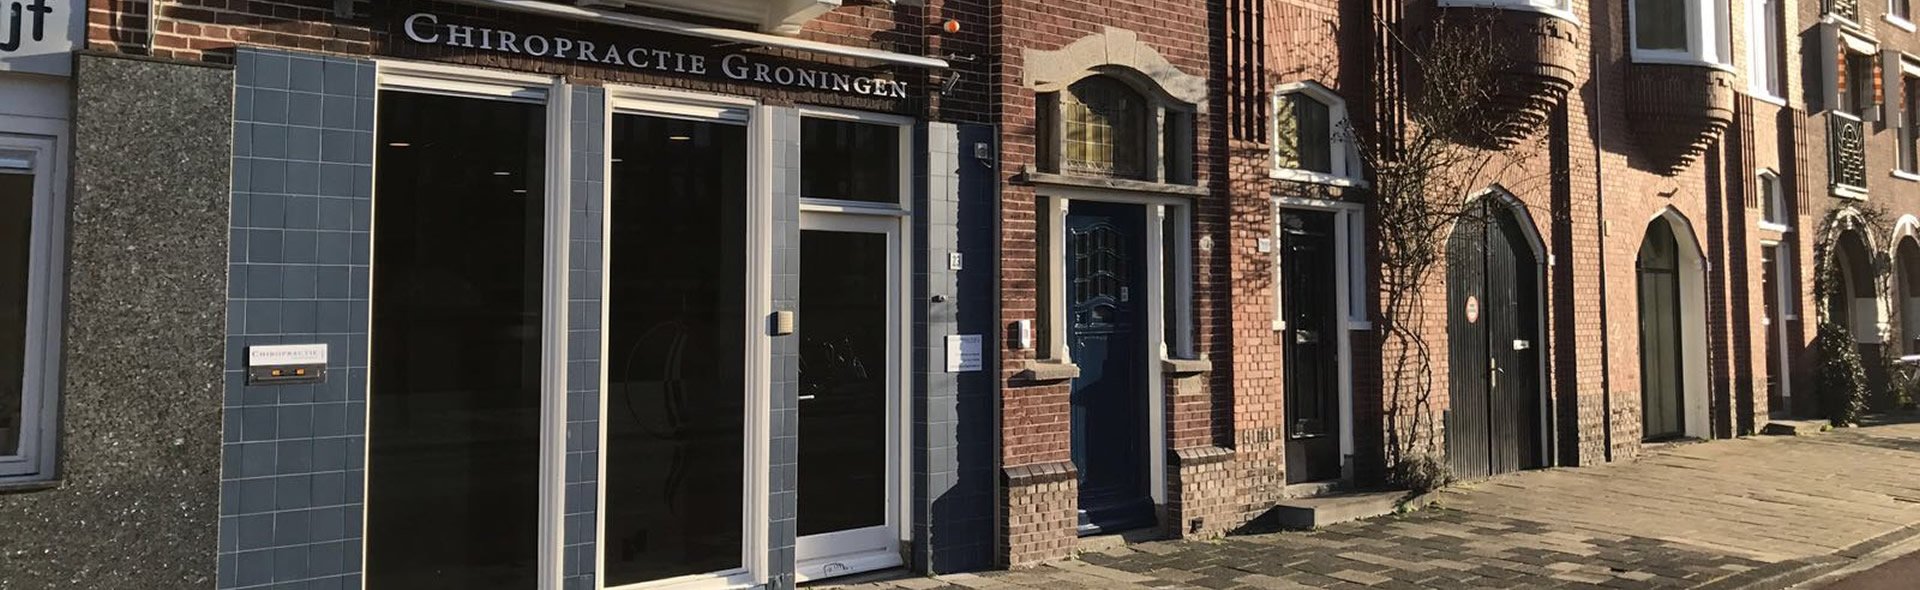 Chiropractie Groningen